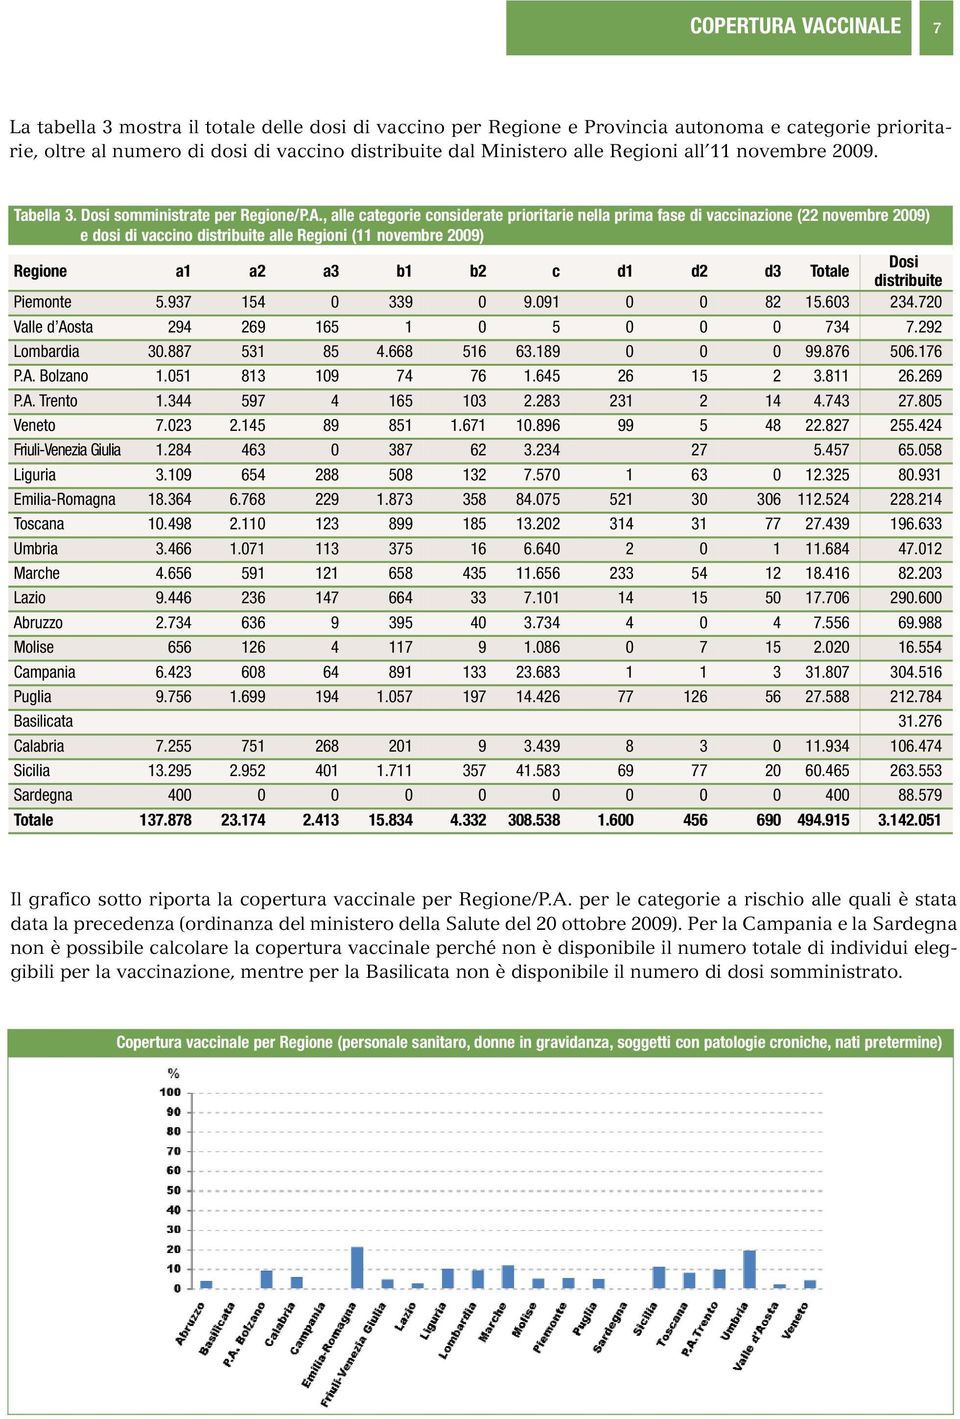 , alle categorie considerate prioritarie nella prima fase di vaccinazione (22 novembre 2009) e dosi di vaccino distribuite alle Regioni (11 novembre 2009) Regione a1 a2 a3 b1 b2 c d1 d2 d3 Totale